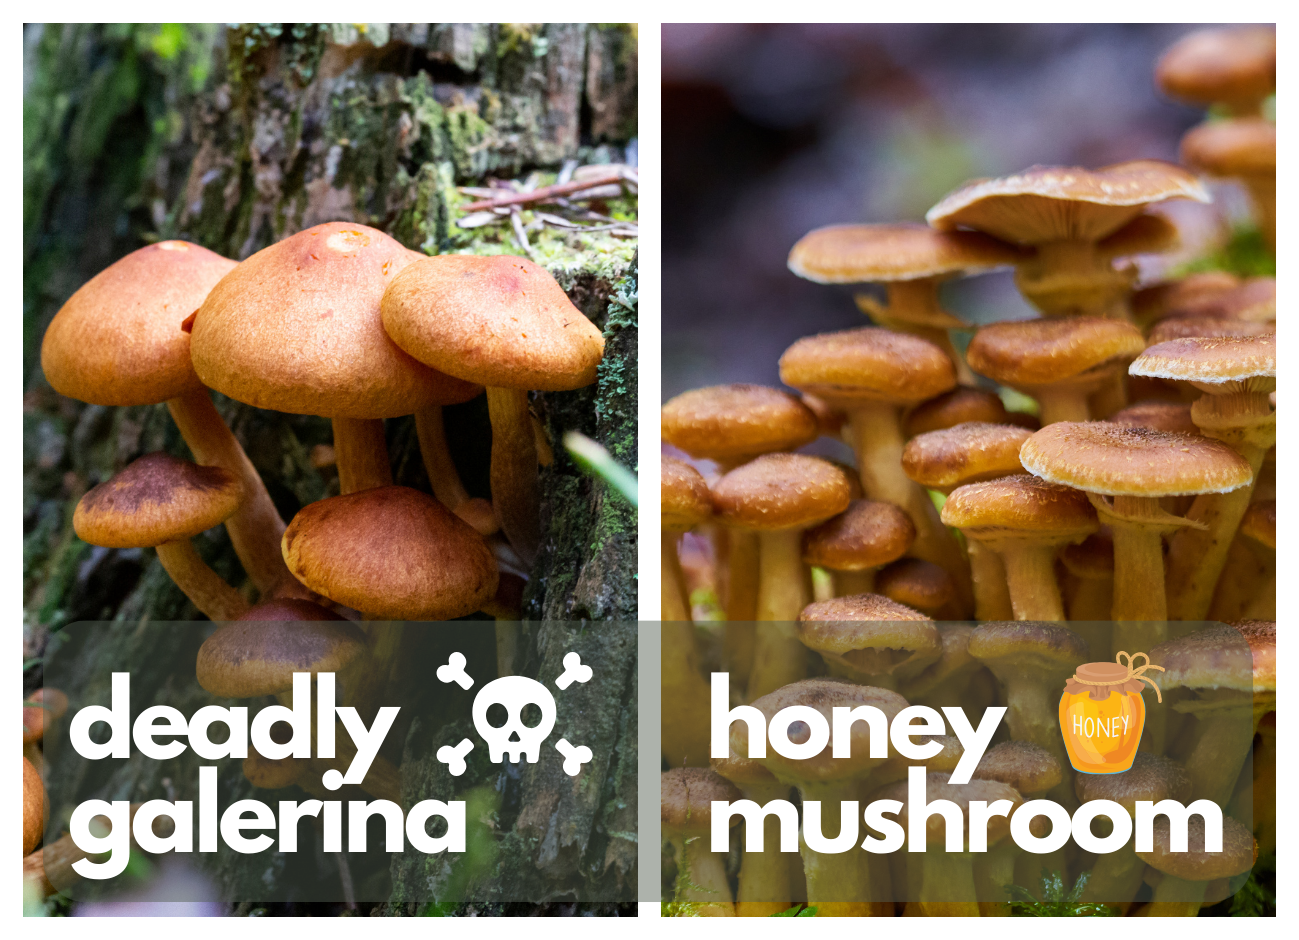 Honey Mushroom vs. Deadly Galerina